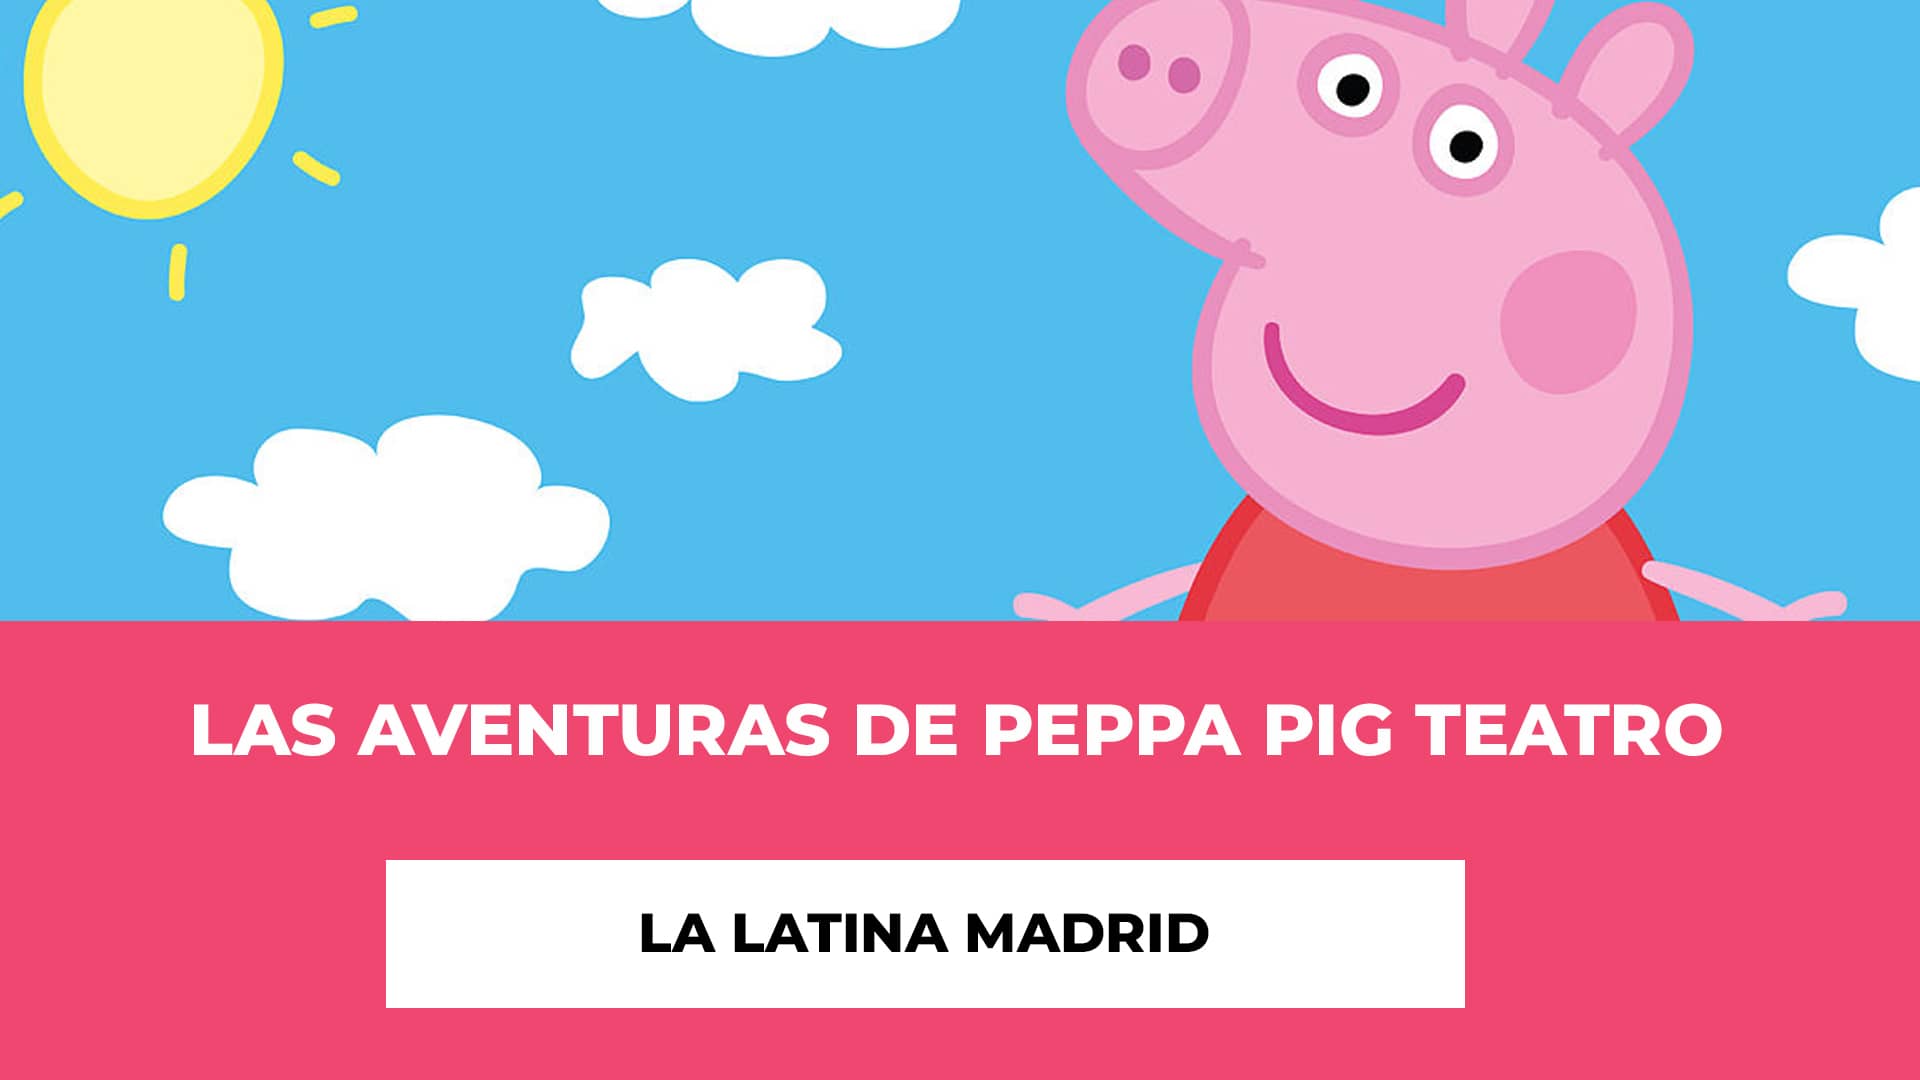 Las aventuras de Peppa Pig Teatro La Latina Madrid - Fechas - Hora - Lugar - Sinopsis - Aprendizaje y Entretenimiento - Entradas